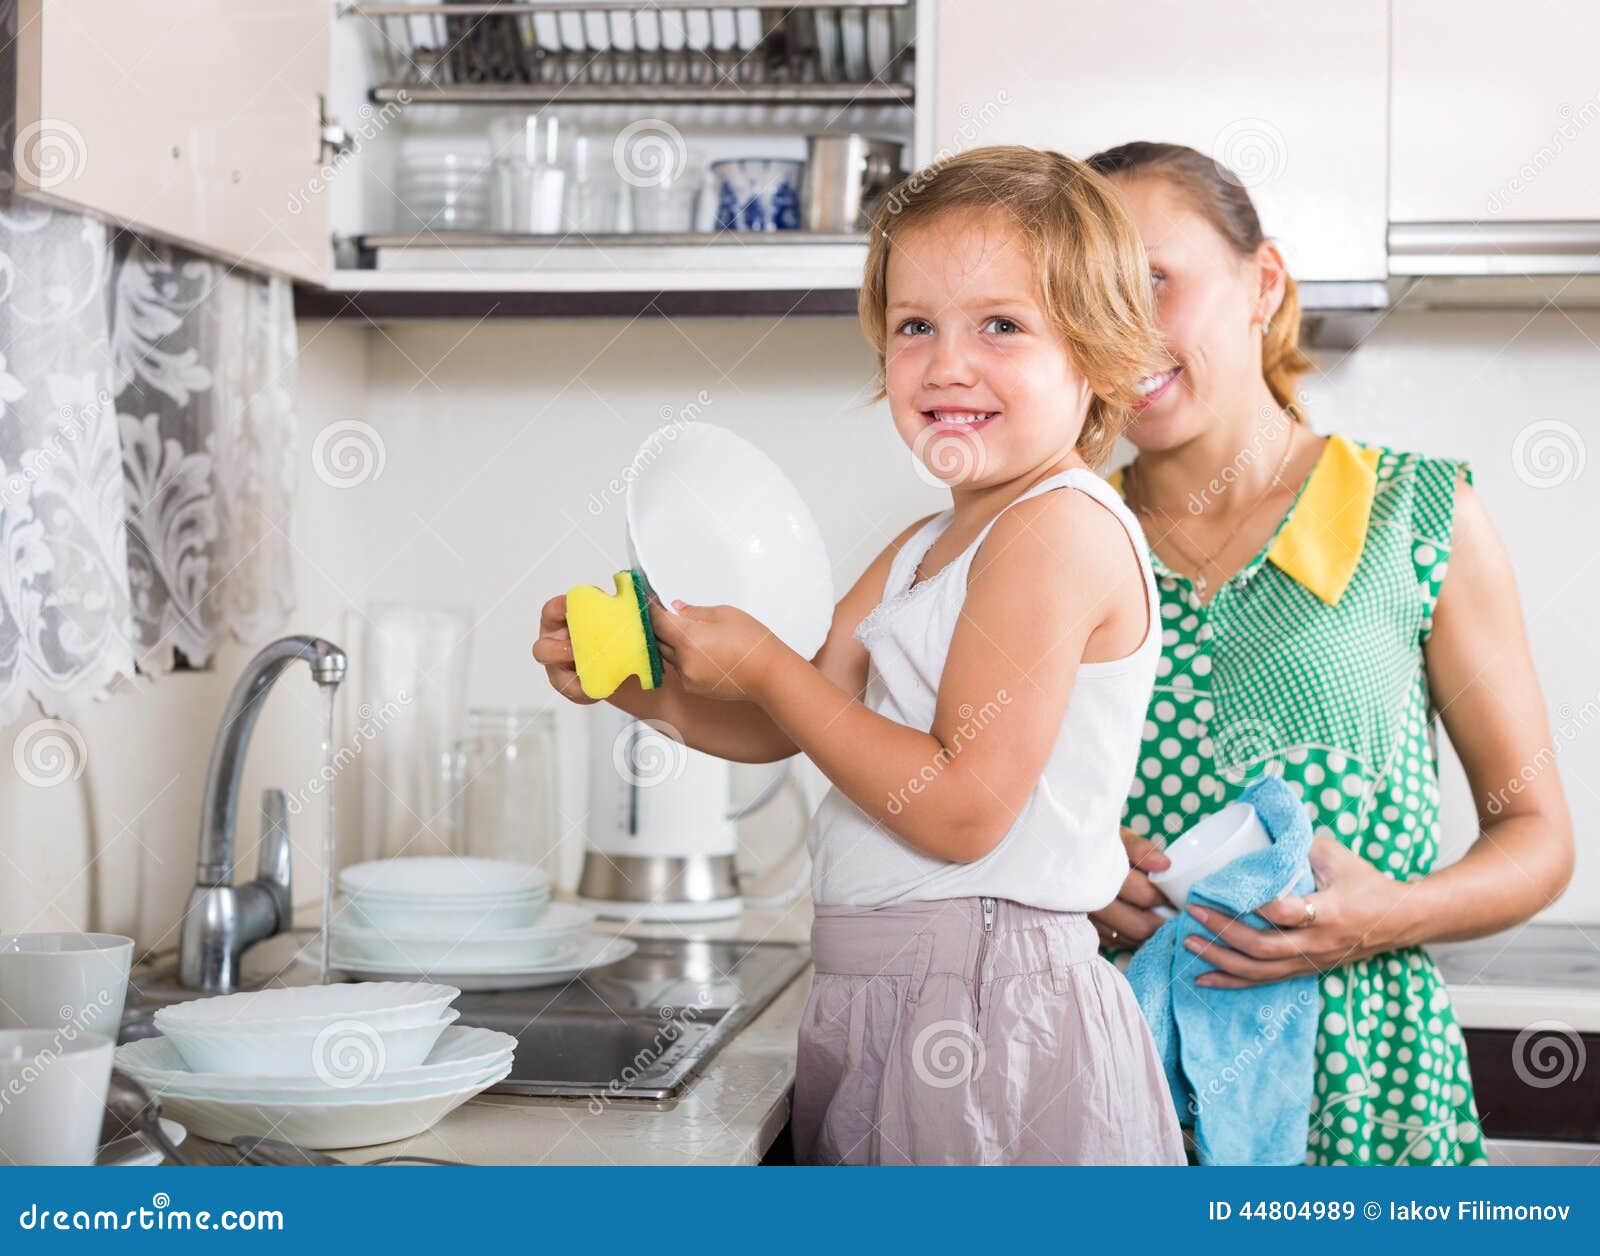 Наташа помогала матери по хозяйству. Помогать маме по дому. Мама с дочкой моют посуду. Посуда для девочек. Девочка помогает маме мыть посуду.